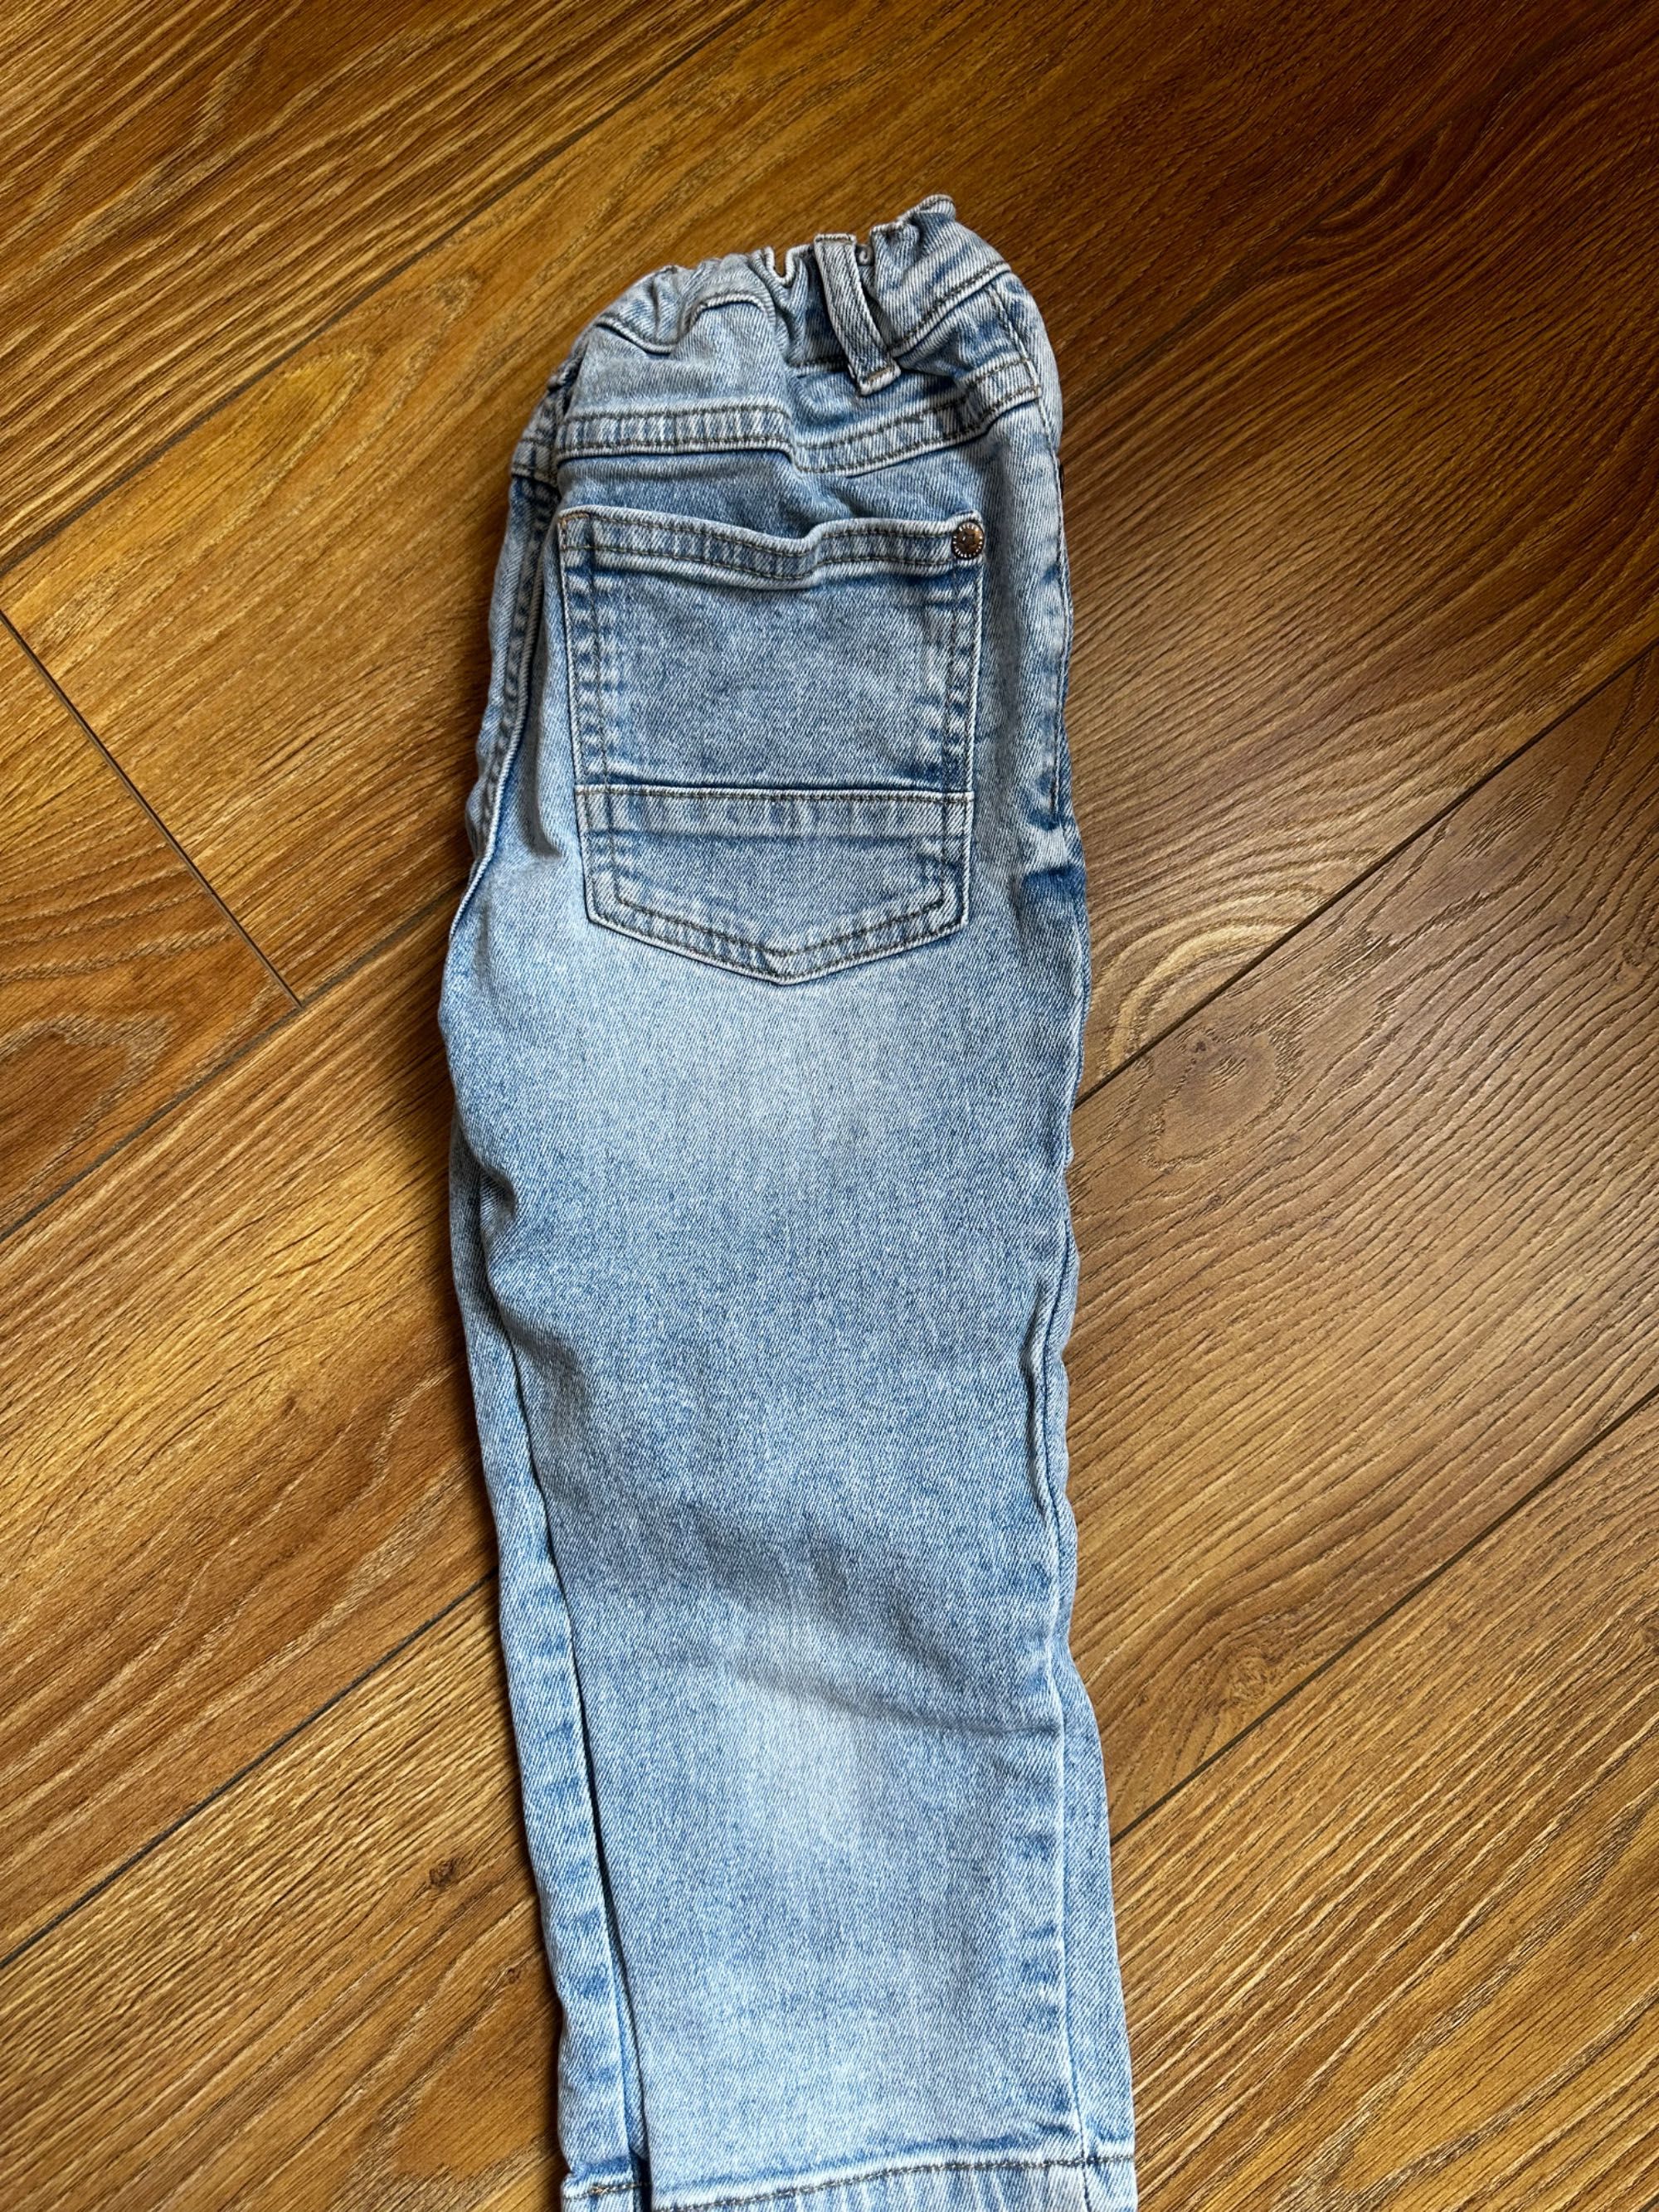 Штаны, джинсы 7 пар на рост 92-98 мальчику